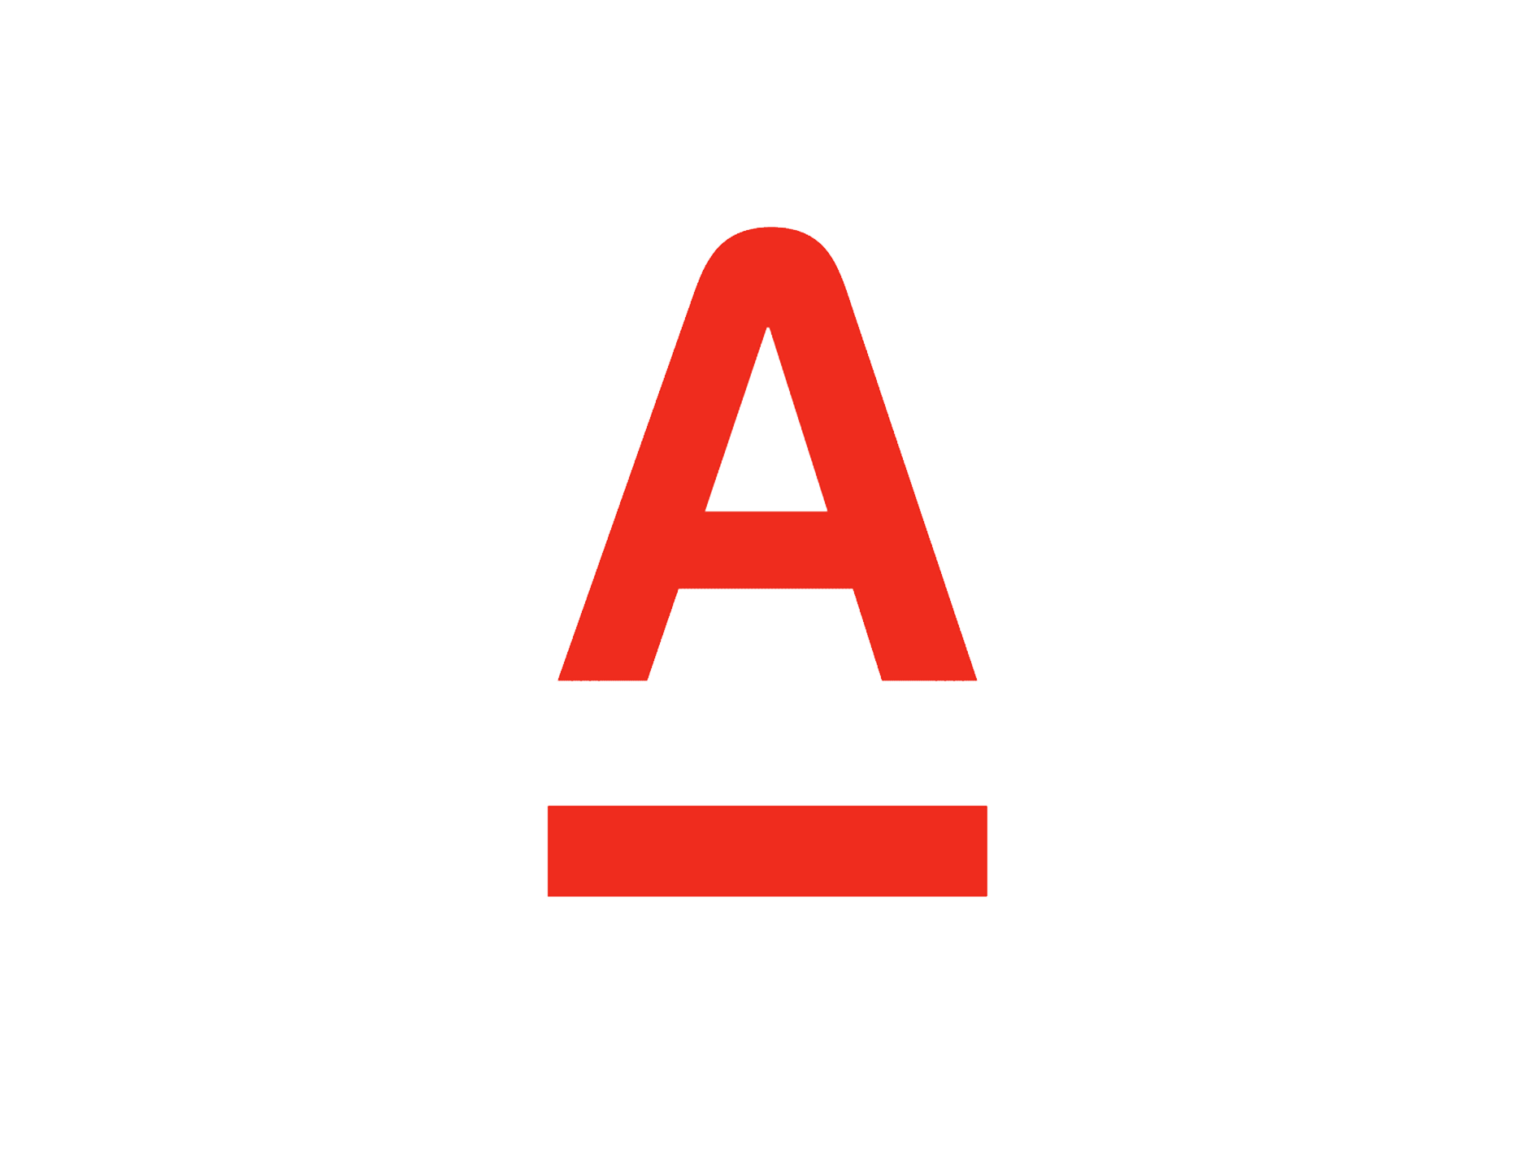 Бик 770801001. Альфа банк логотип 1990. Первый логотип Альфа банка. Альфа банк лого старое. Логотип Альфа банка новый.